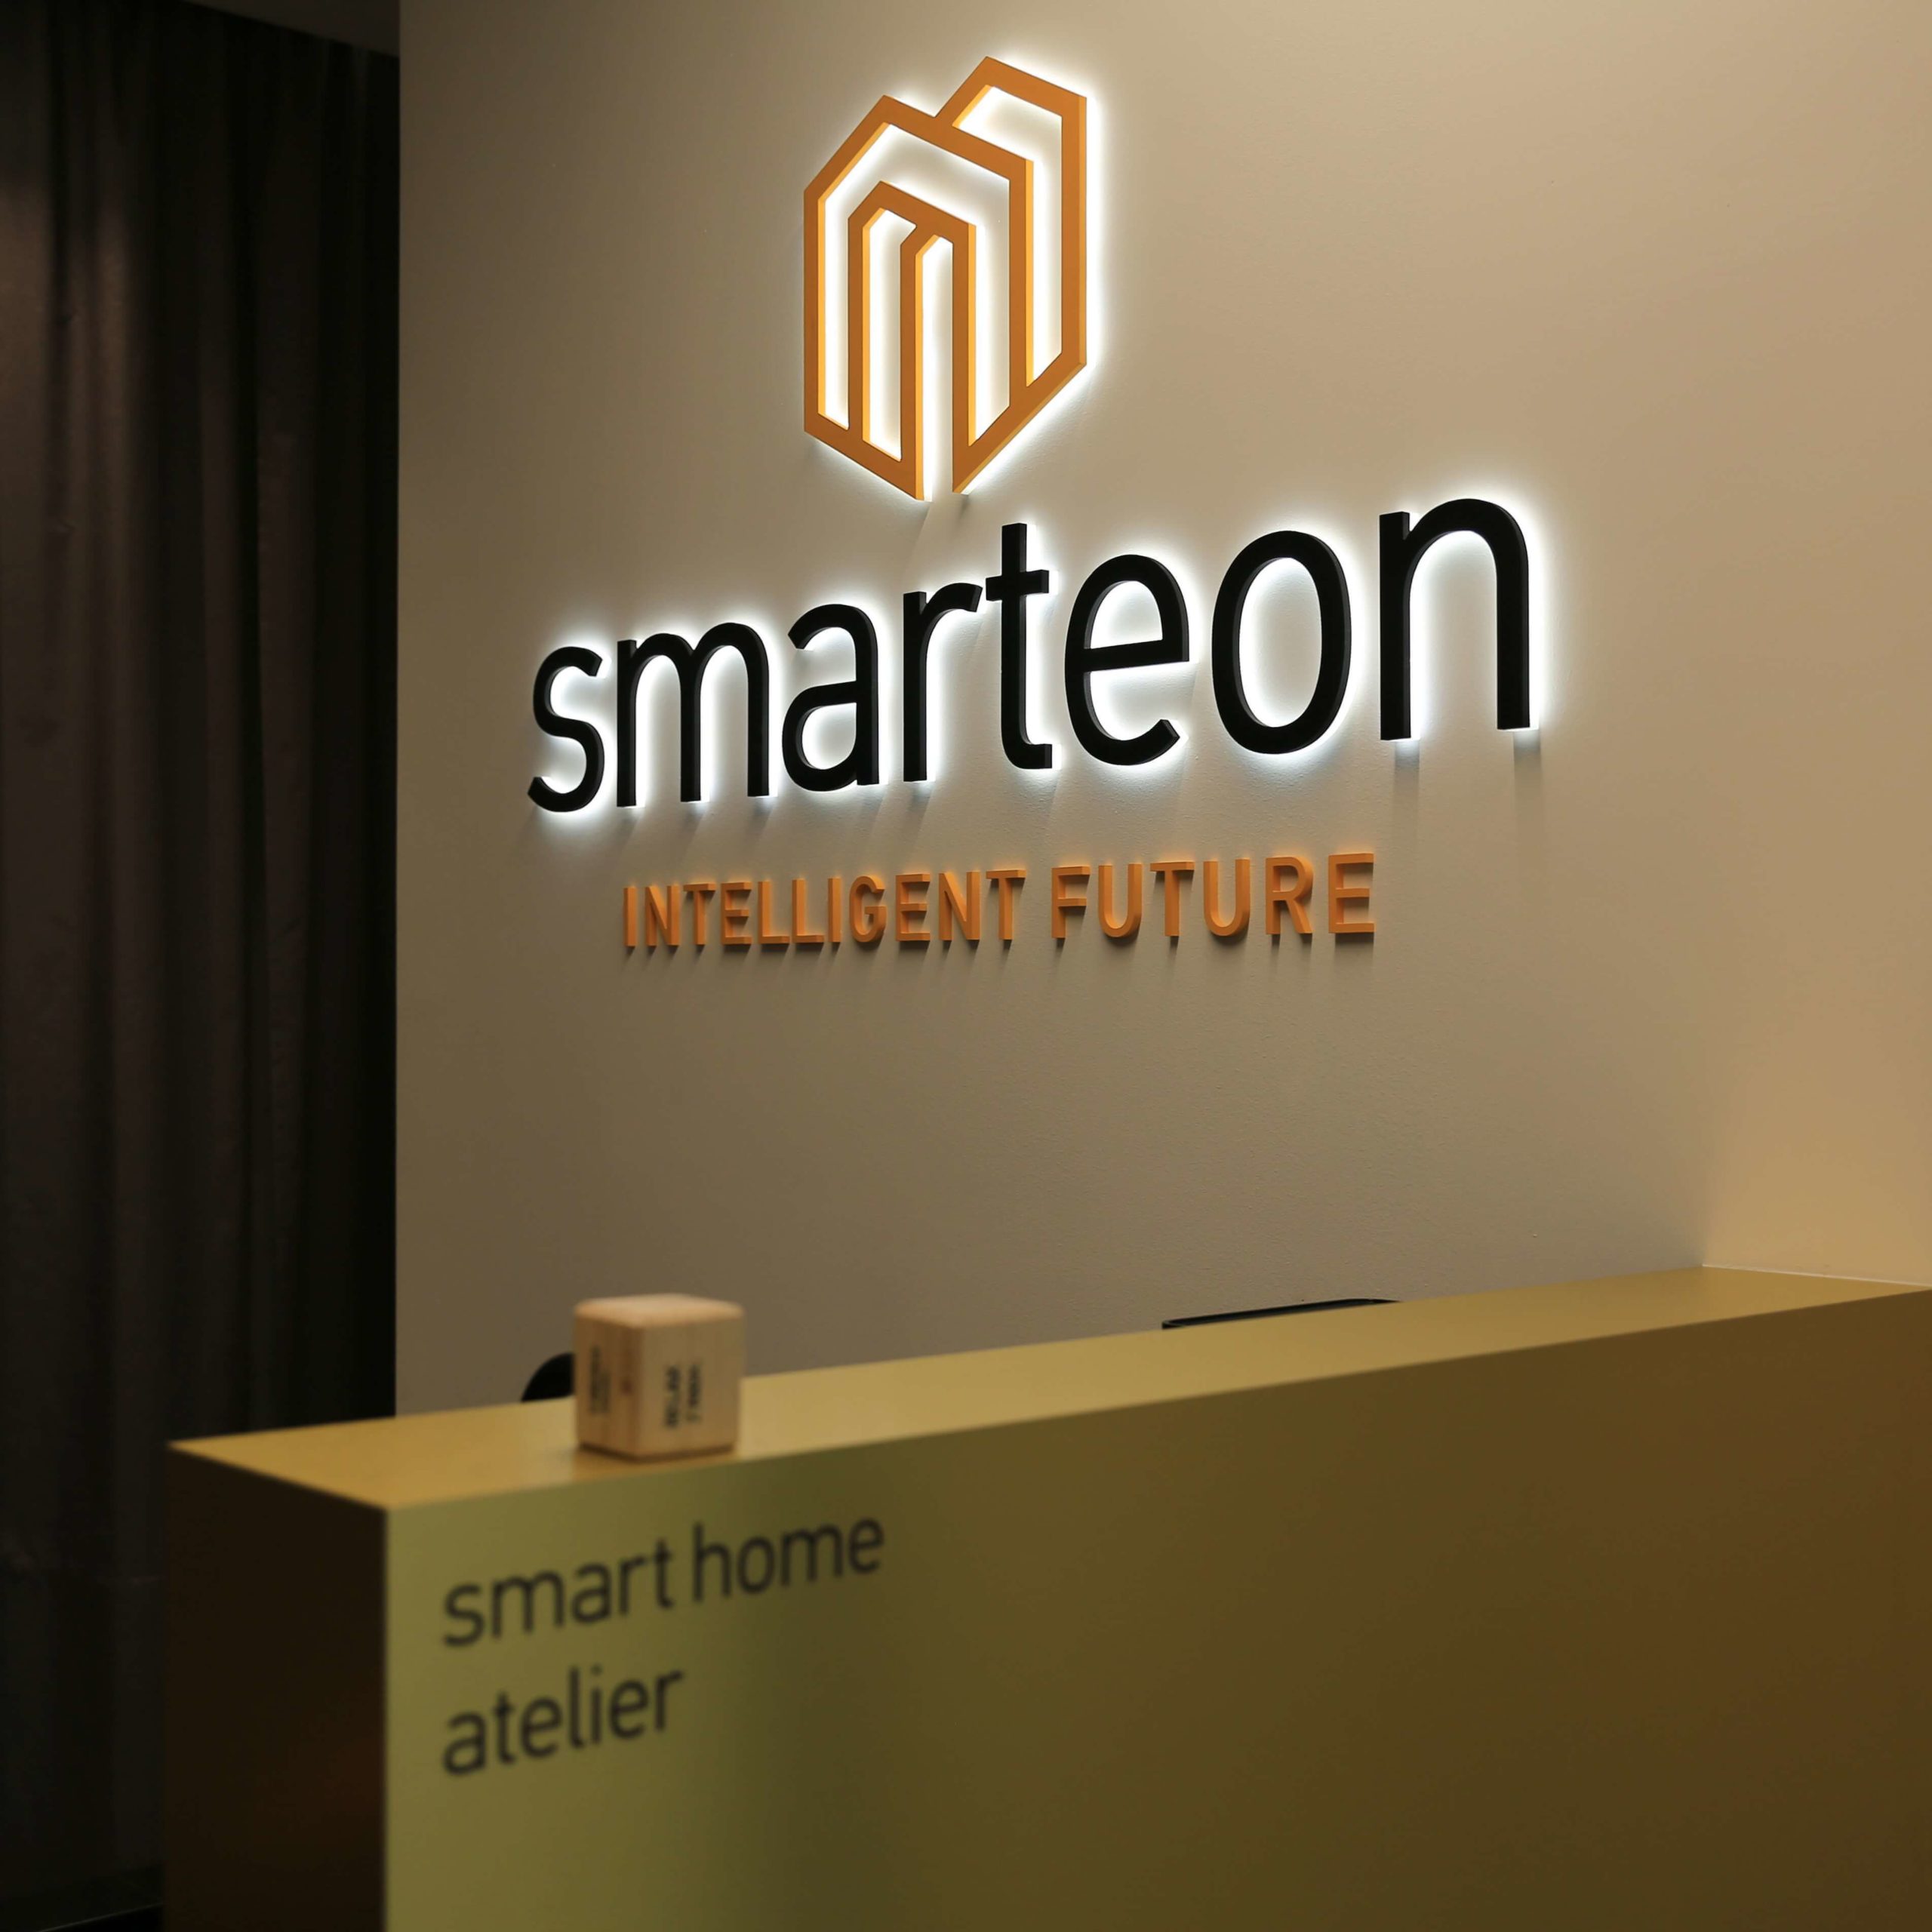 Chytrý showroom Smarteon